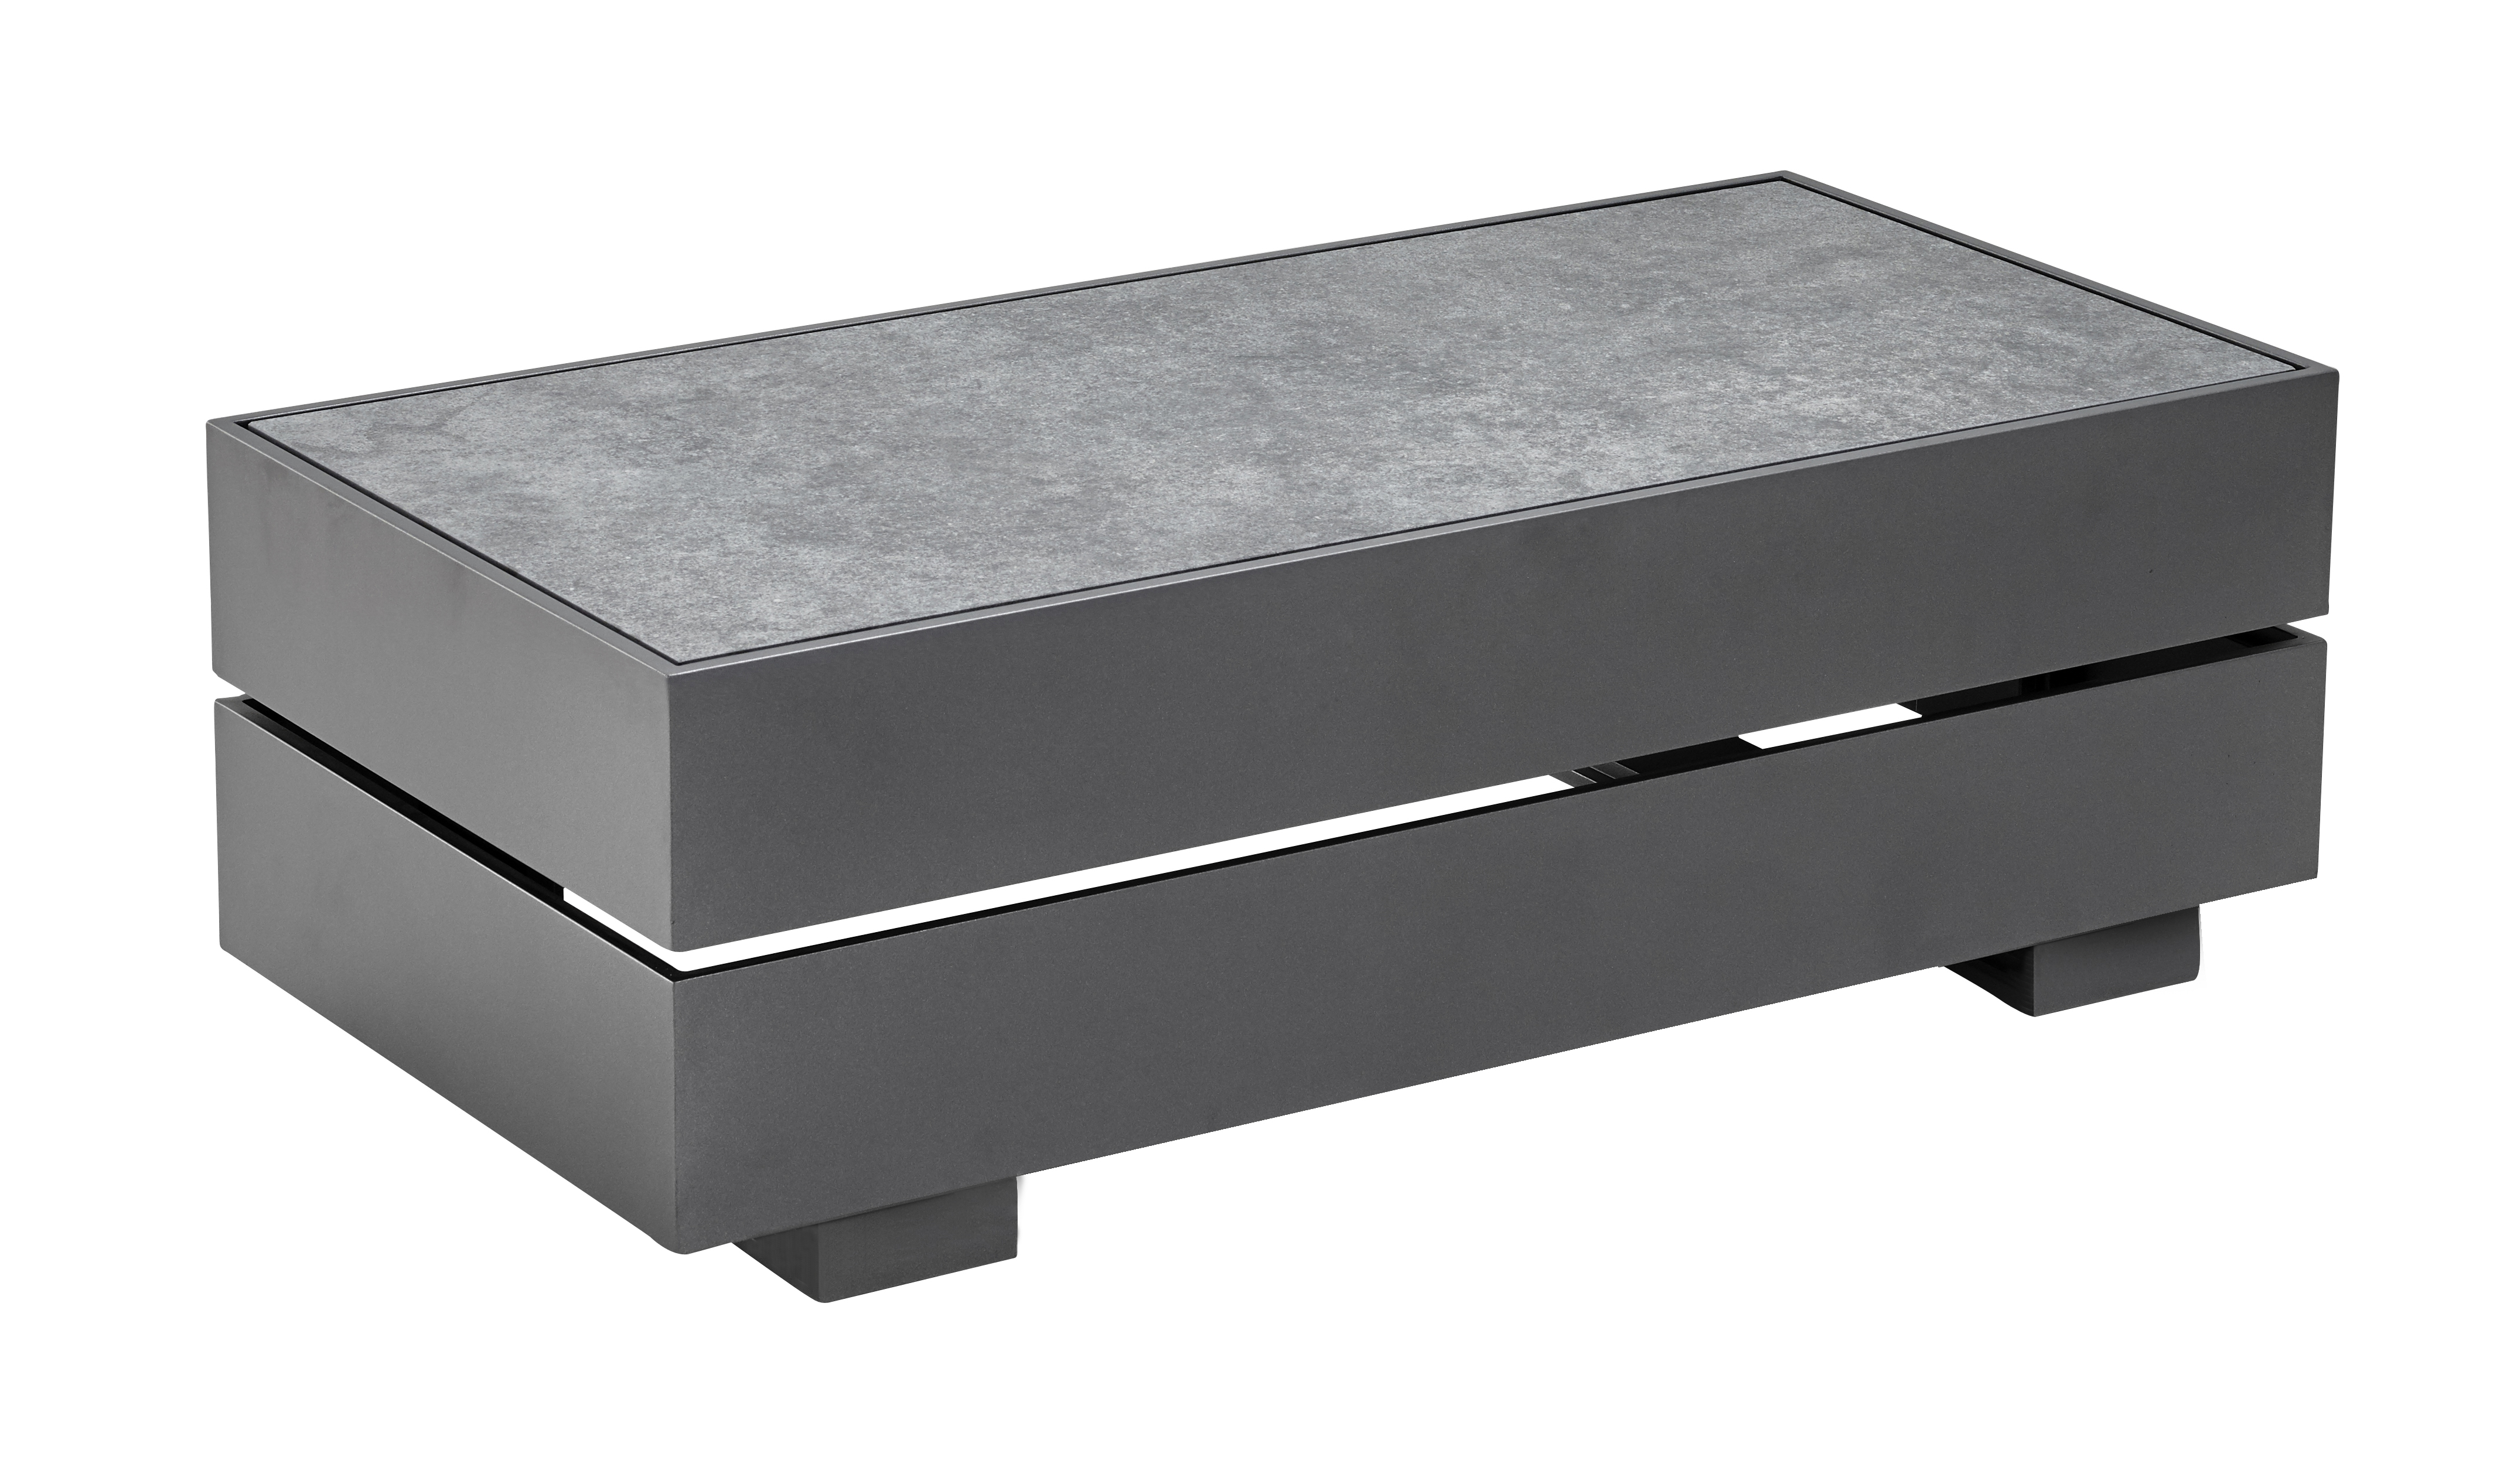 Solpuri BOXX Tisch-Modul XS  Alu anthrazit | Keramik Standard brick grey